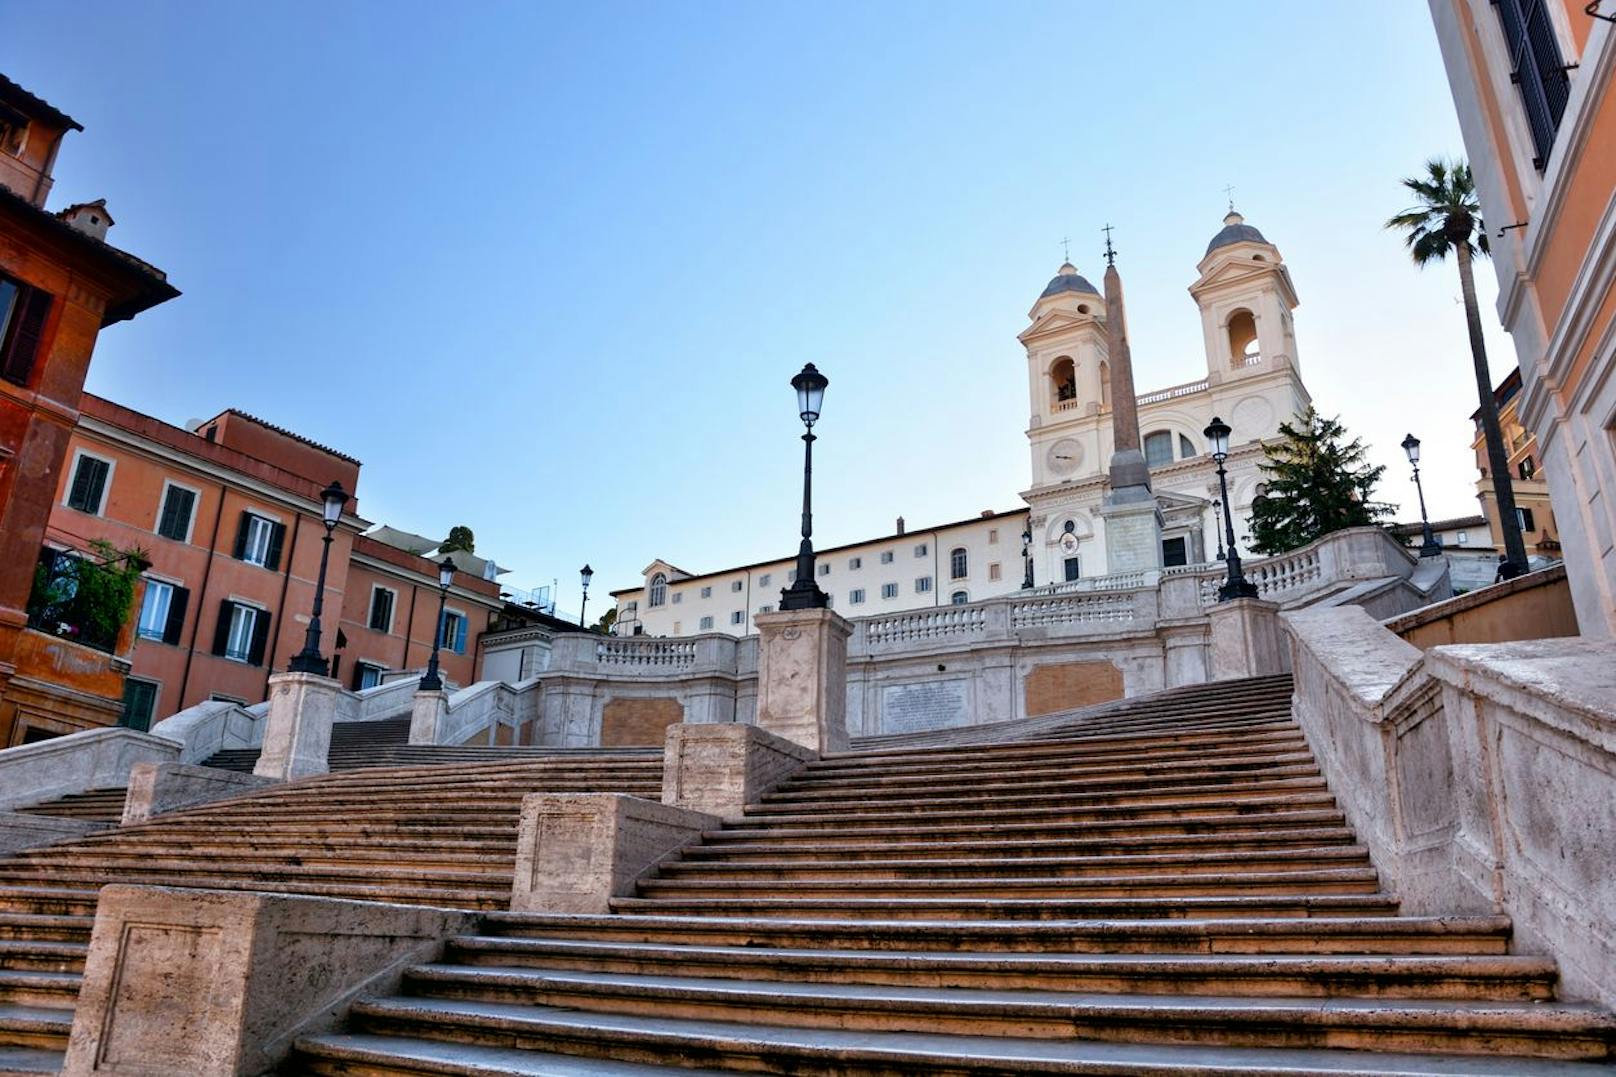 Die Spanische Treppe ist eine der am stärksten bewachten Sehenswürdigkeiten in der italienischen Hauptstadt und UNESCO Weltkulturerbe.